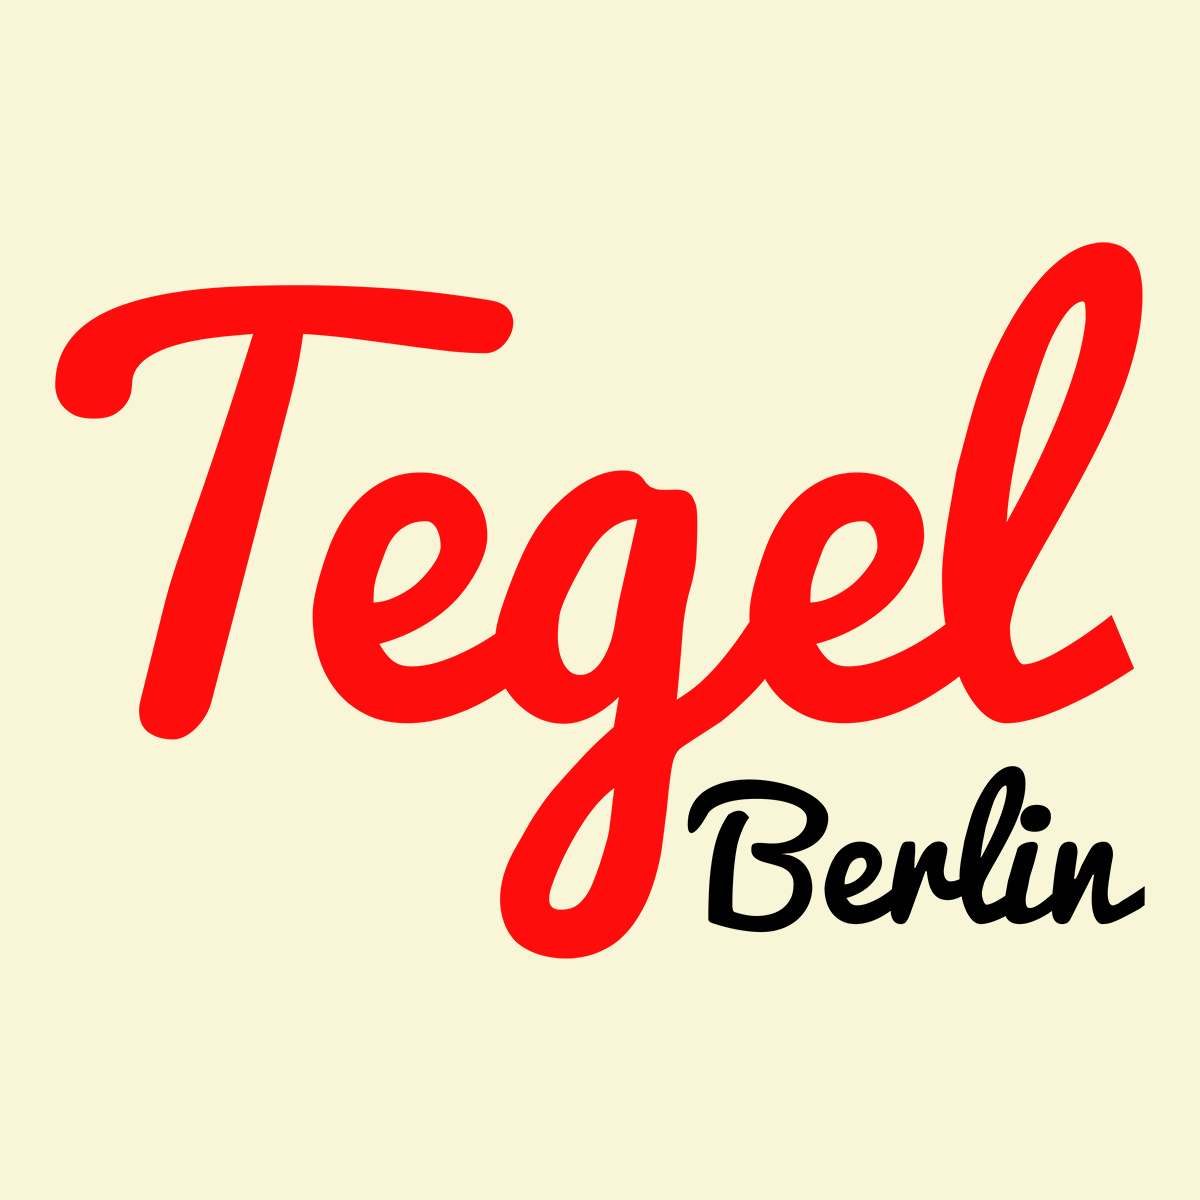 Tegel Berlin